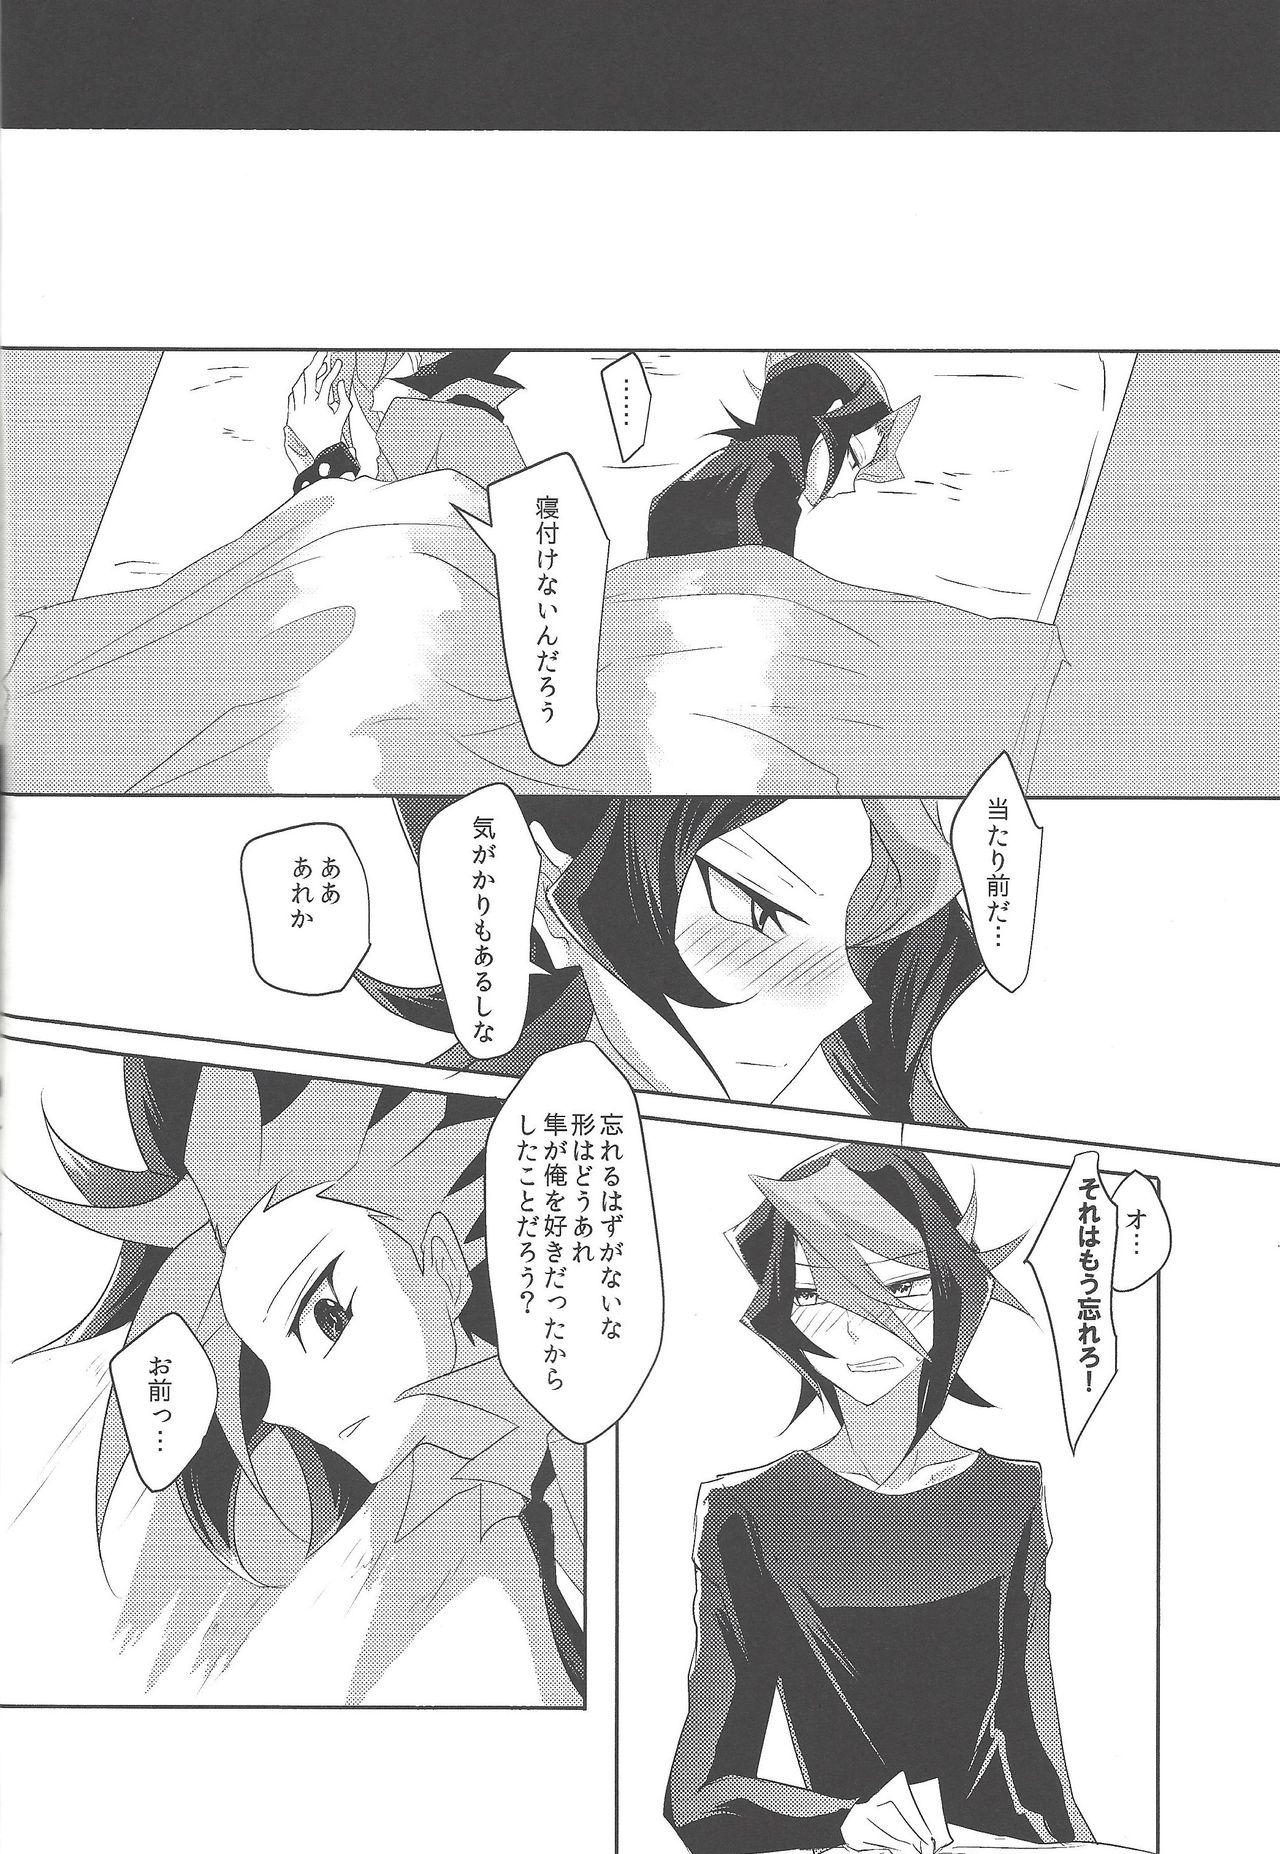 Uncensored Kimi to kokoro no risōkyō - Yu-gi-oh arc-v POV - Page 27